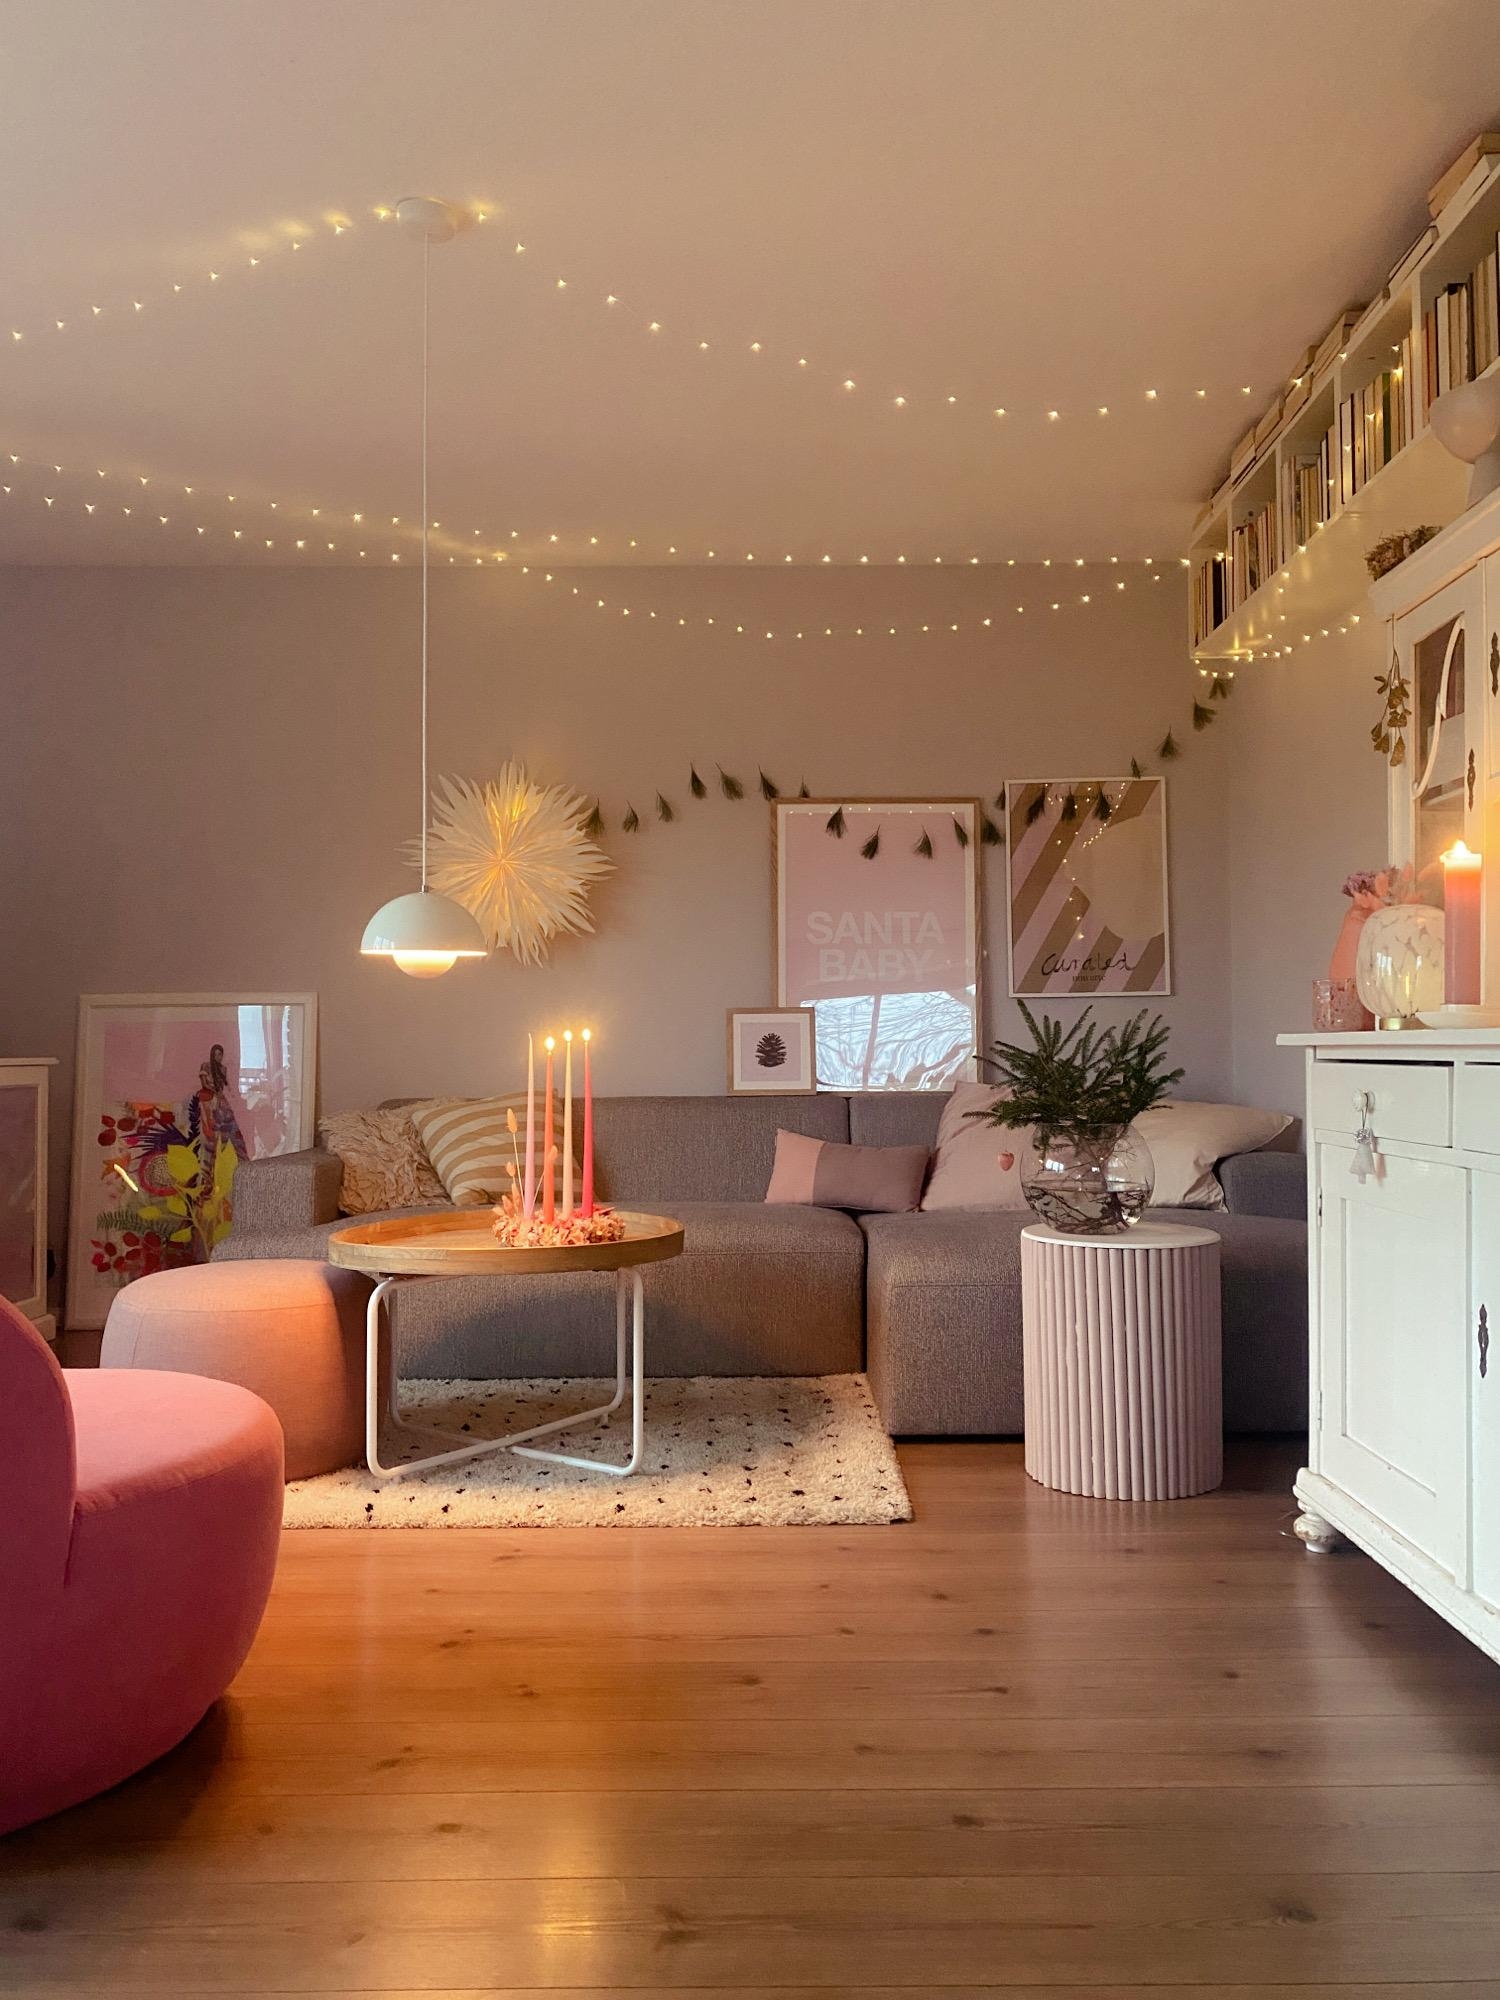 Einen schönen dritten Advent.
#xmas#livingroom#cozychristmas#couchstyle#weihnachtszeit 